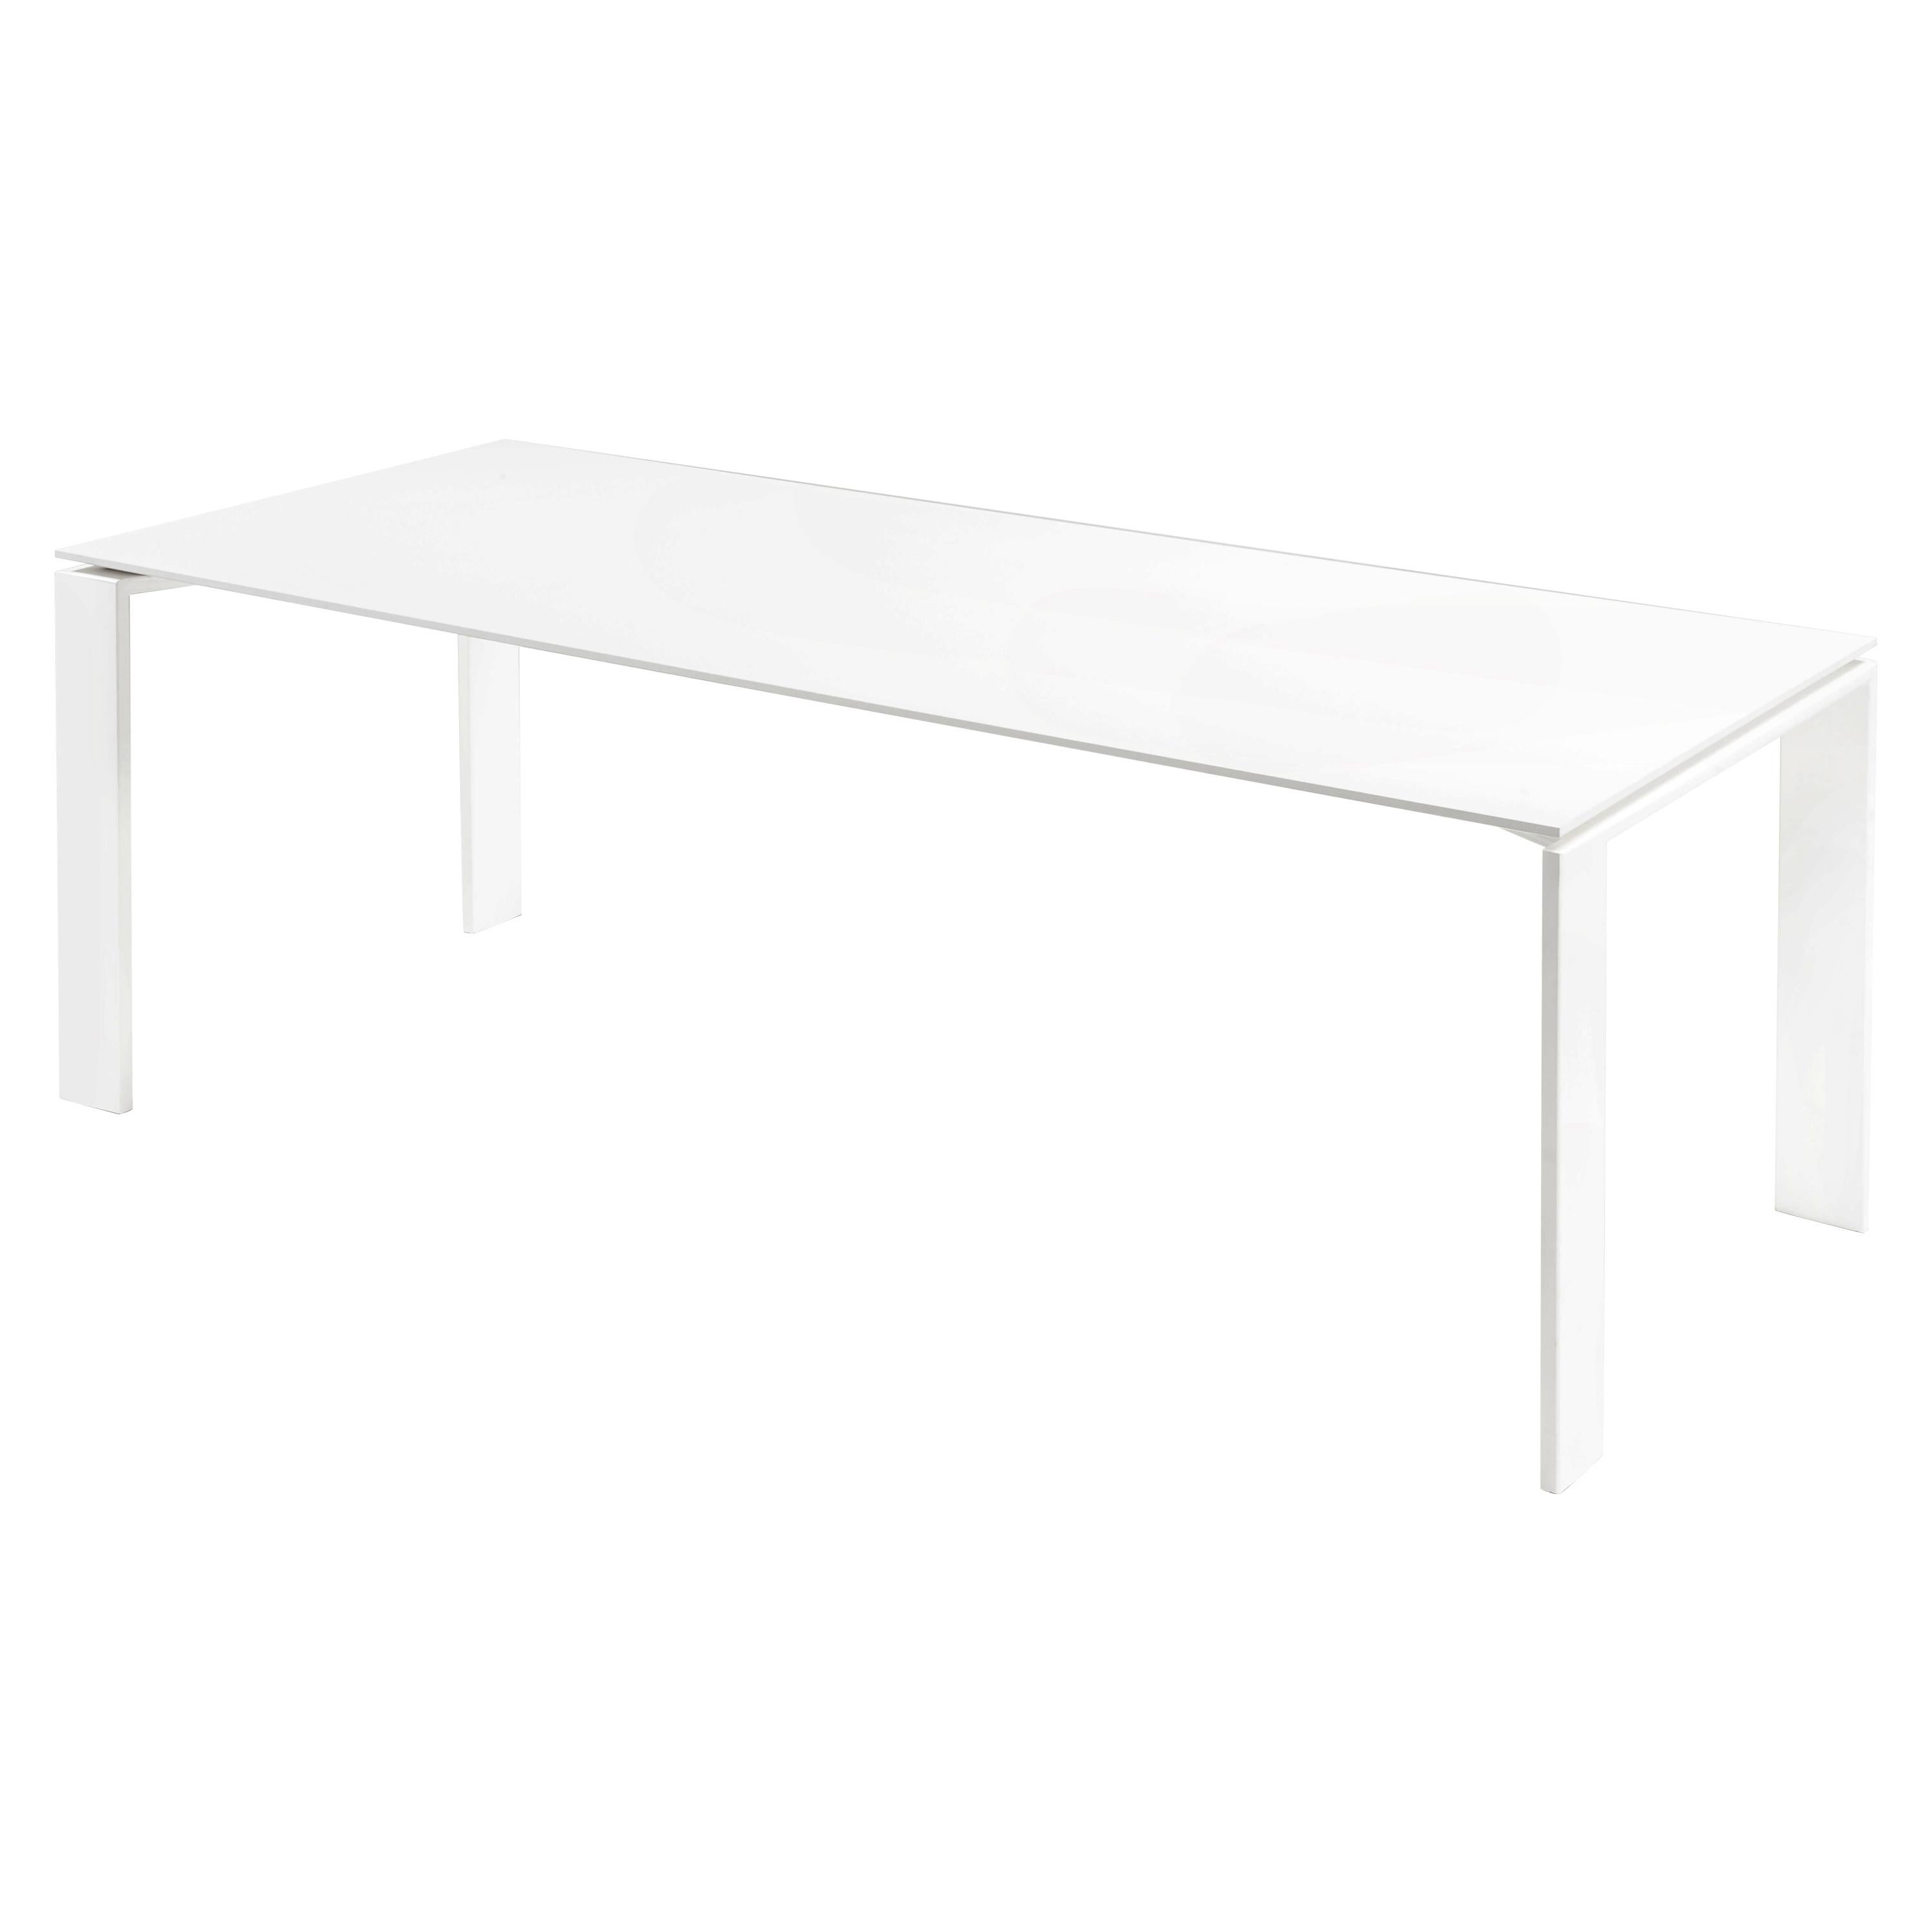 Kartell Outdoor-Tisch in Weiß von Ferruccio Laviani, Kartell